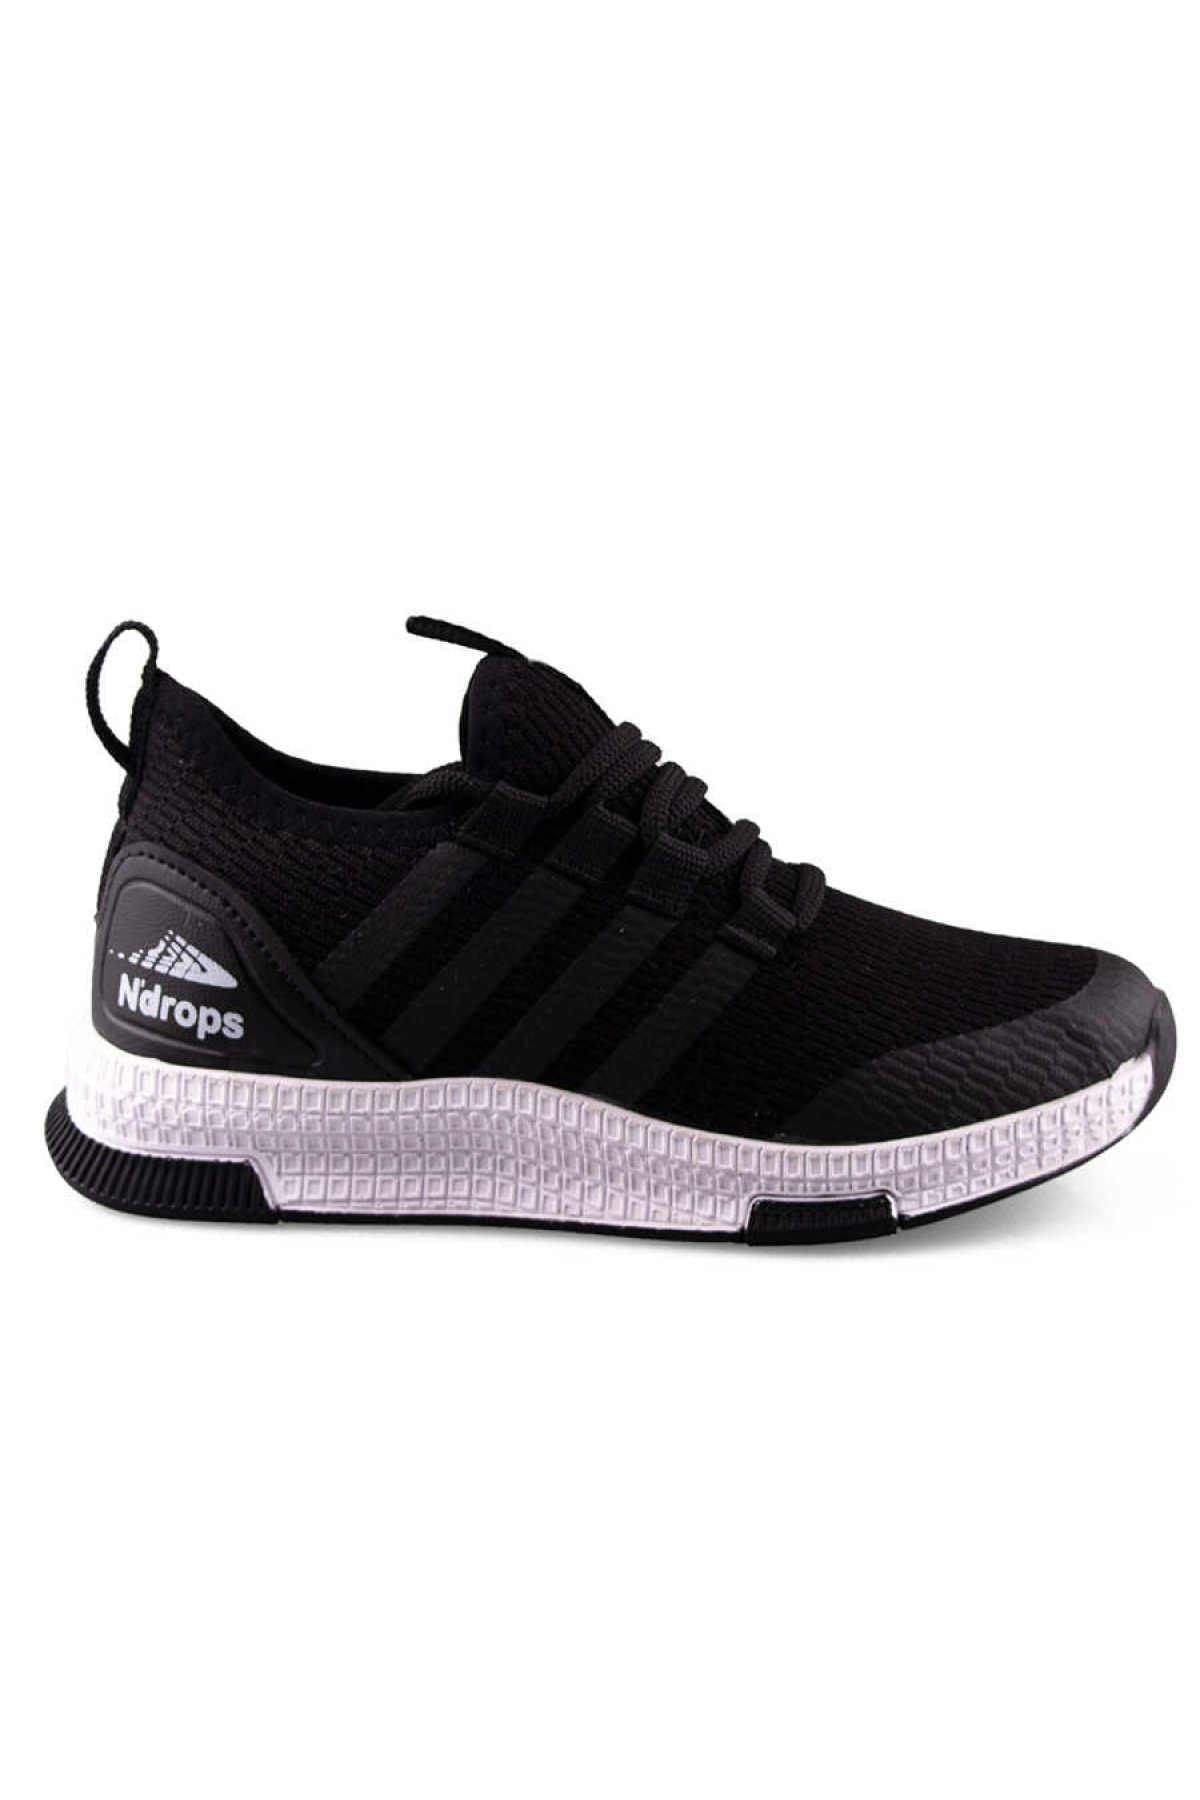 N Drops Unisex Çocuk Siyah Beyaz Bağcıklı Spor Ayakkabı